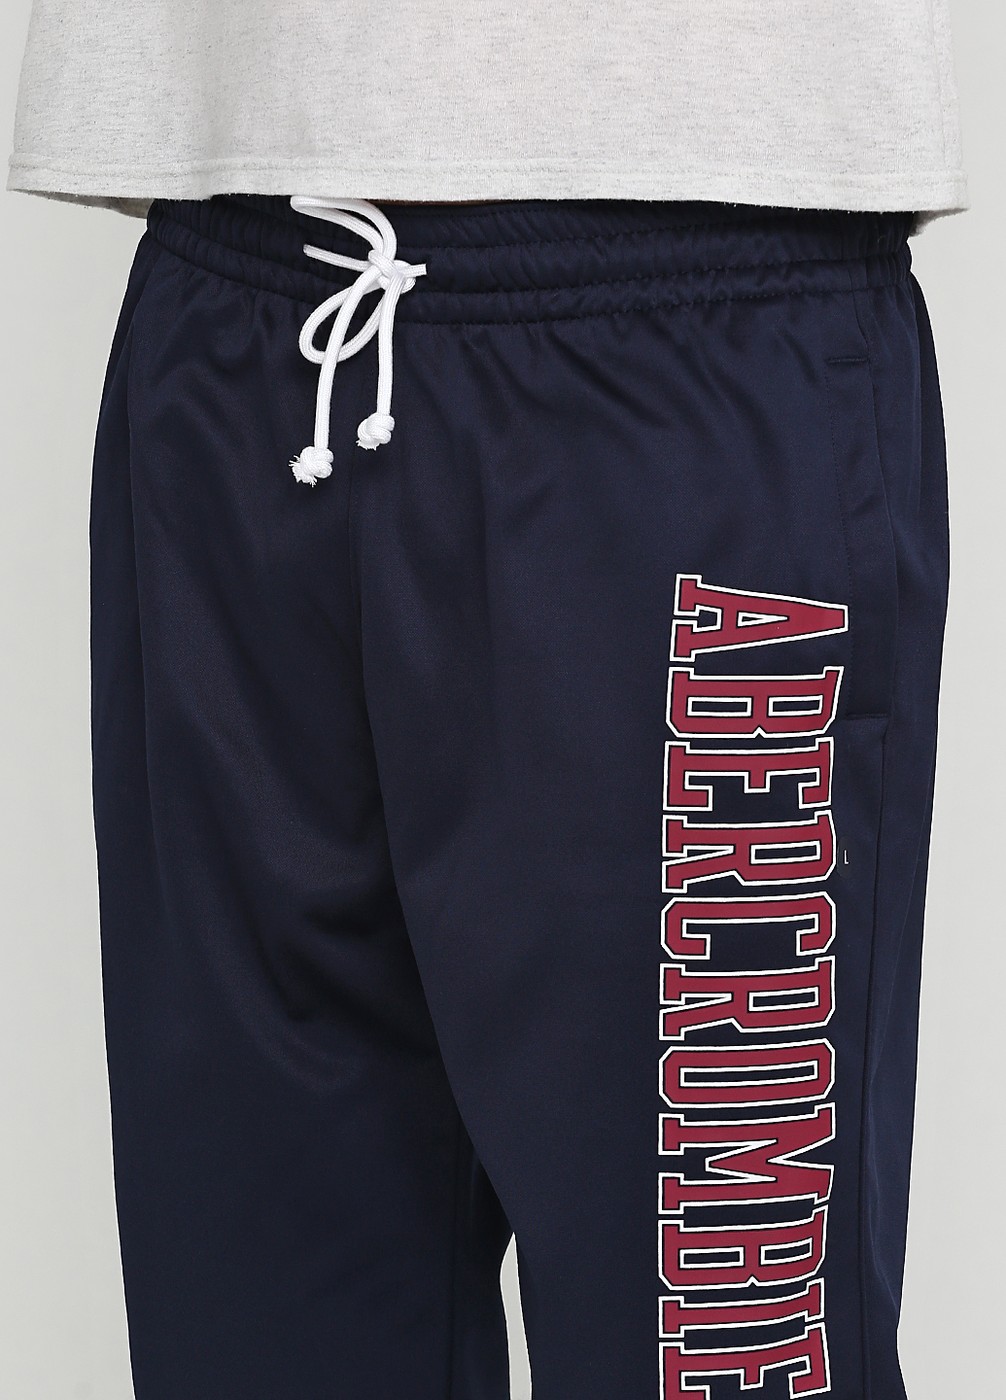 Спортивные штаны - мужские спортивные штаны Abercrombie & Fitch